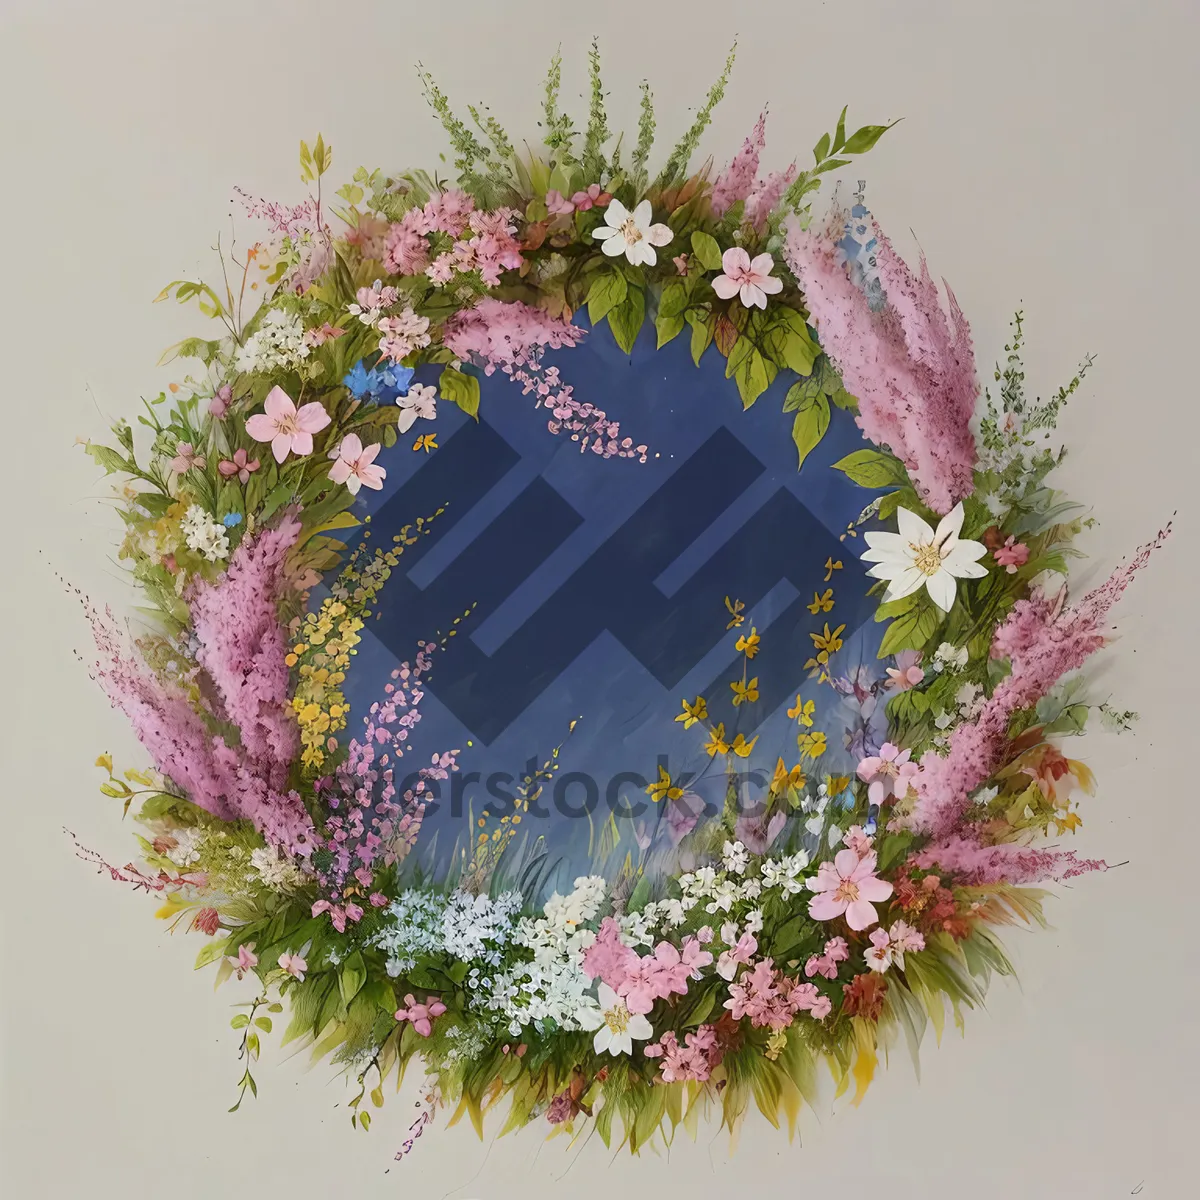 Picture of Winter Floral Bouquet - Festive Season's Decorative Flowers